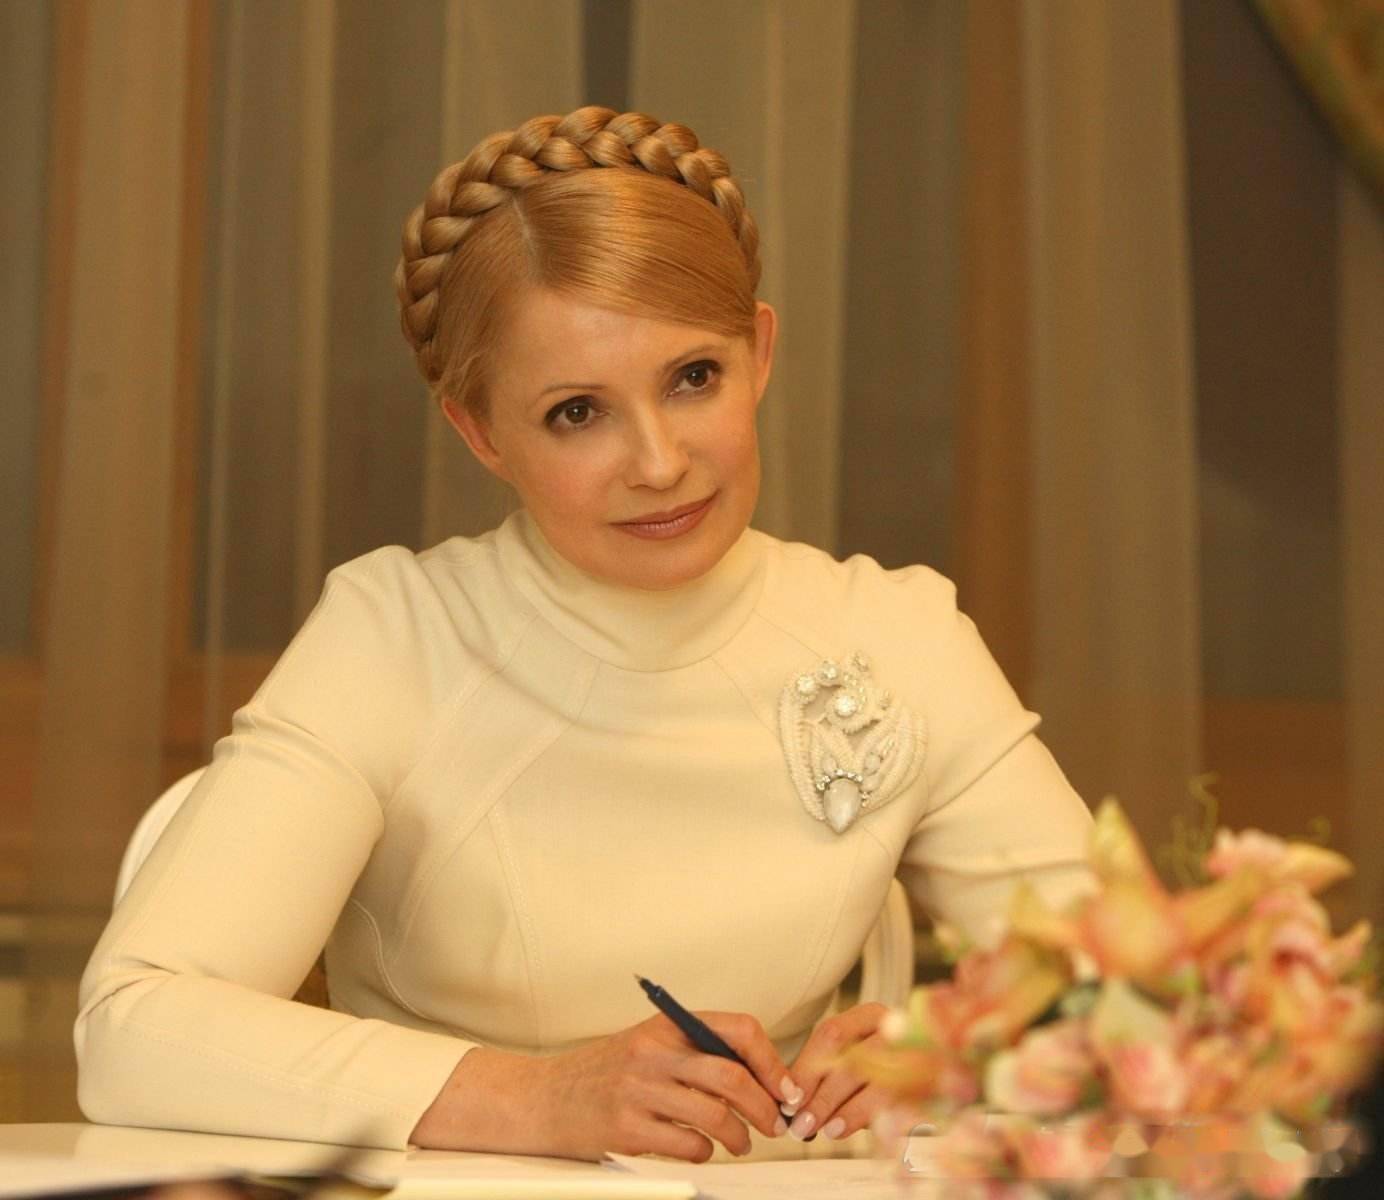 乌克兰女总统头发图片